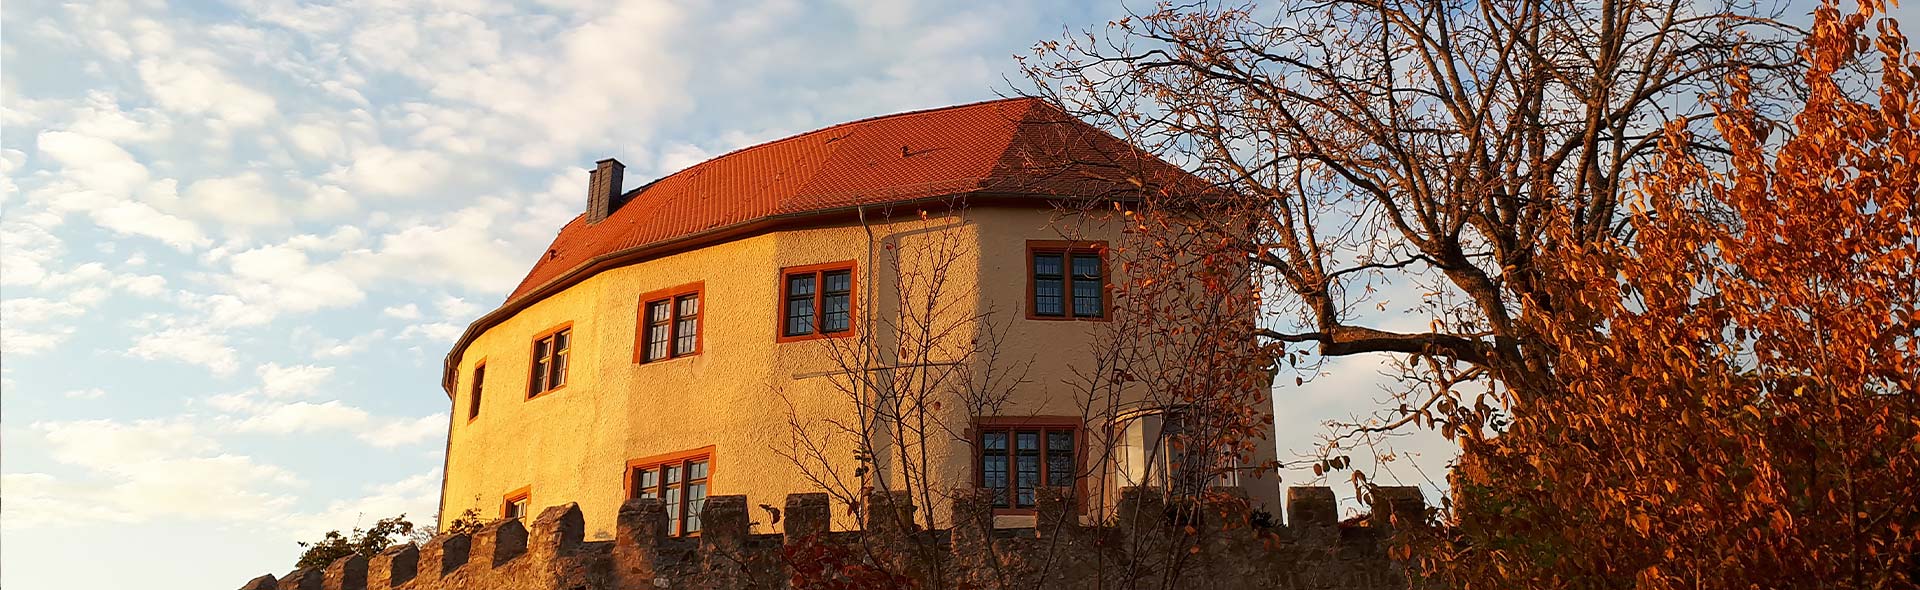 Schloss Reichenberg: Der Krumme Bau auf dem Reichenberg im Sonnenuntergang